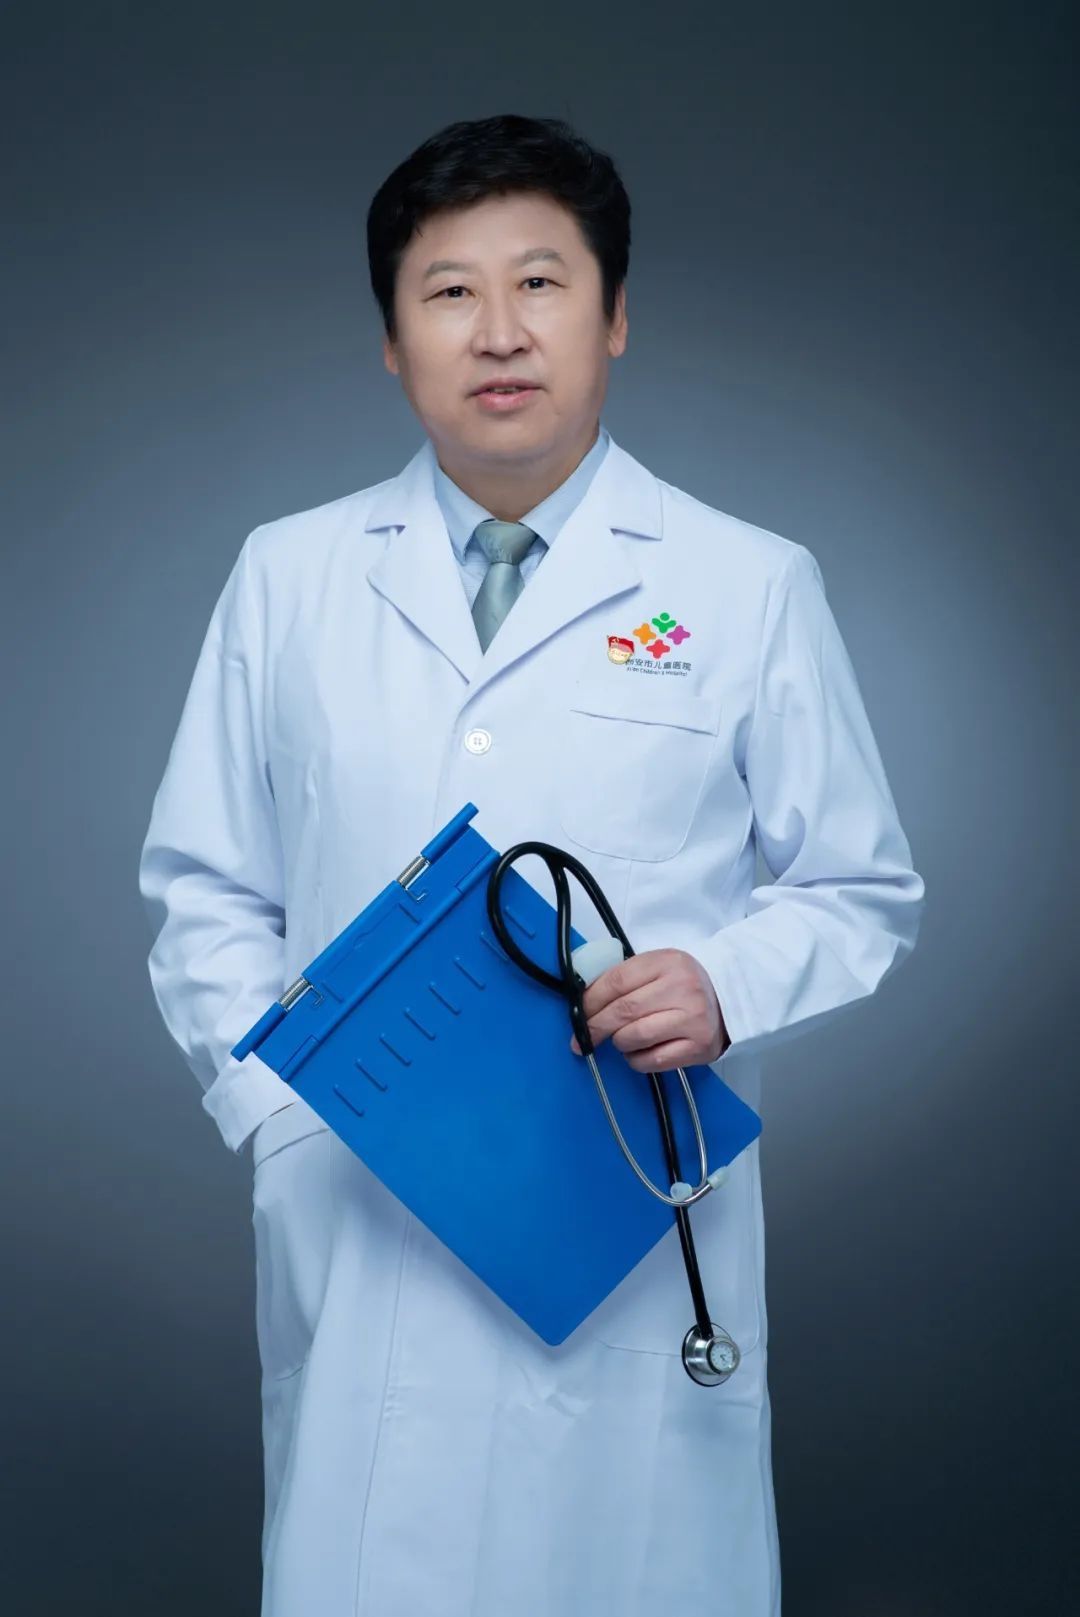 30 特需科主任——谢增辉：不忘初心，在医学的道路上书写生命之爱|儿医名医榜 | 小儿病